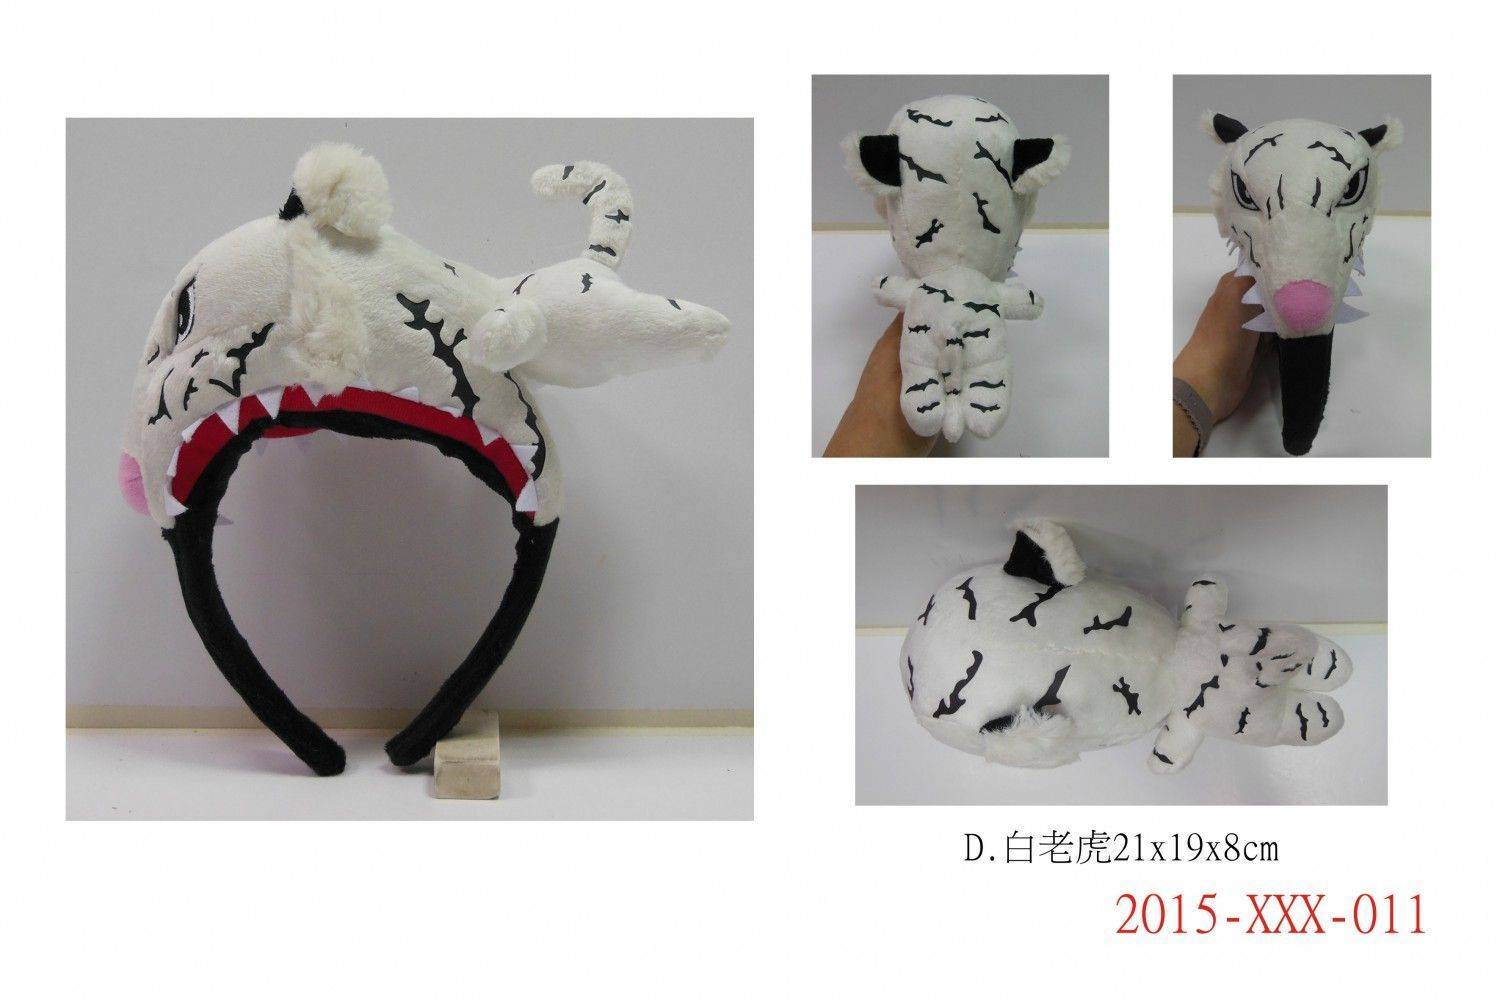 2015-XXX-011A-H動物造型髮箍 D.白老虎21x19x8cm